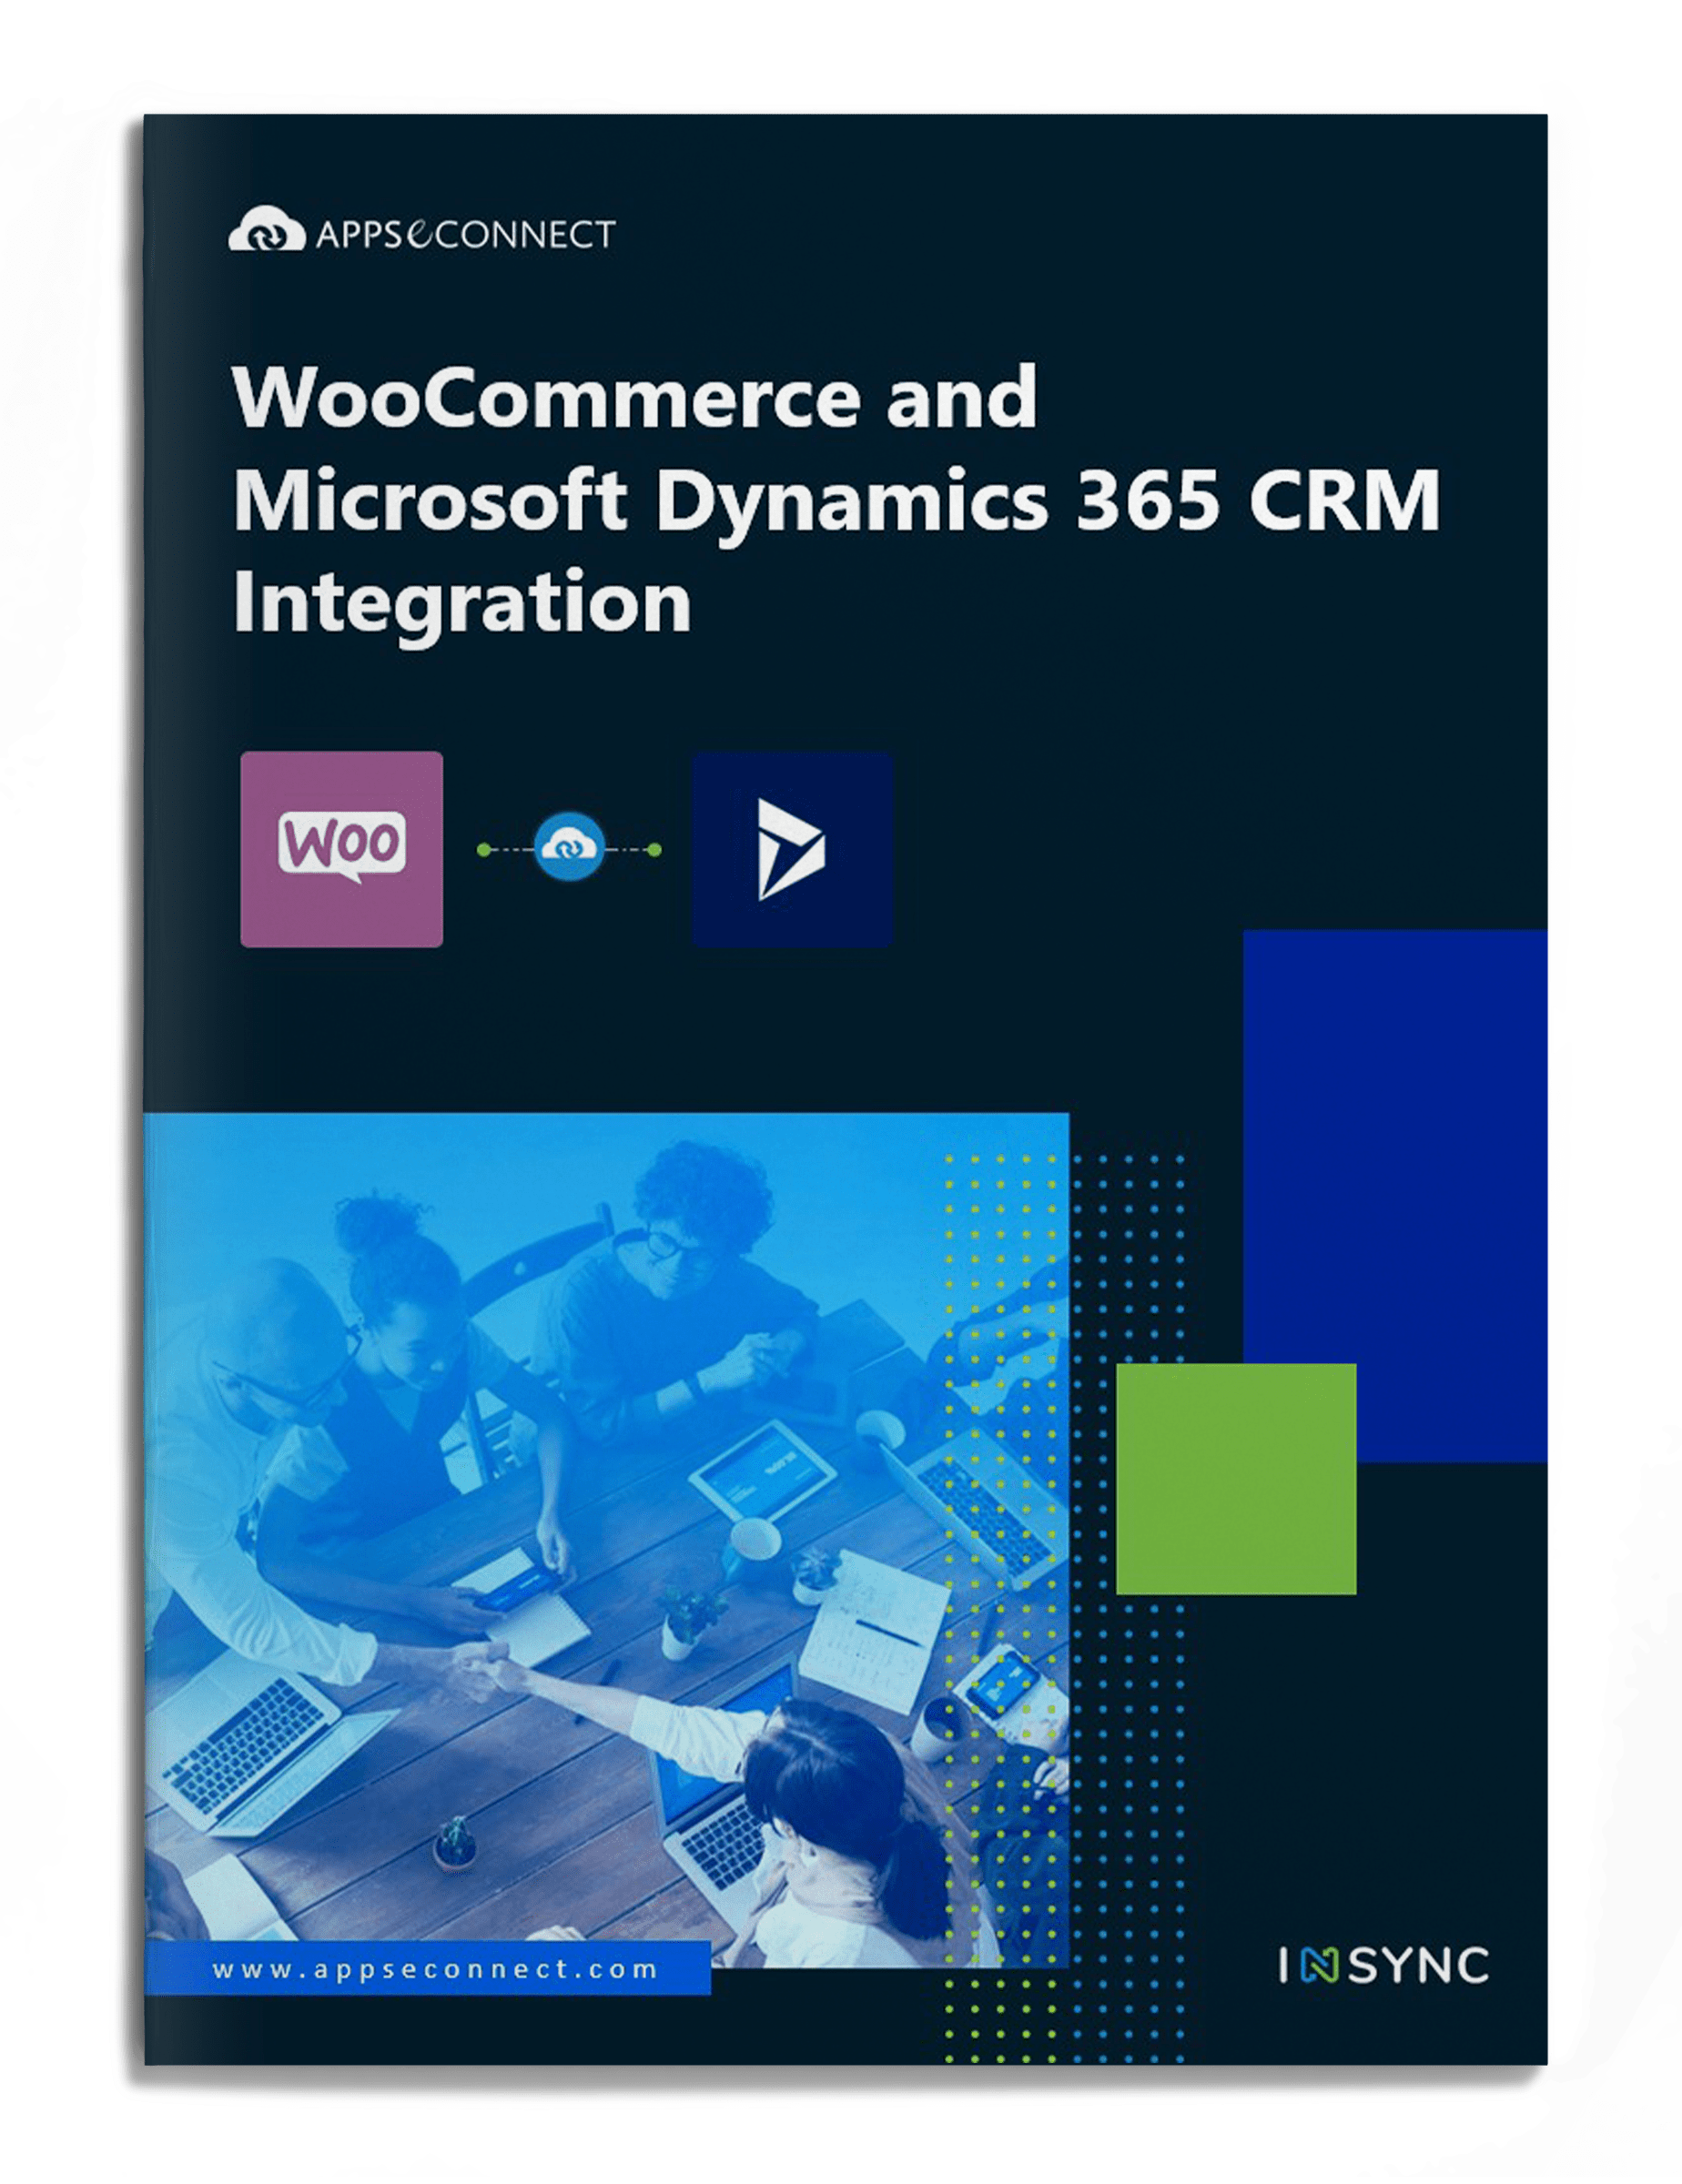 woocommerce-microsoft-dynamics-365-crm-integration-brochure-cover